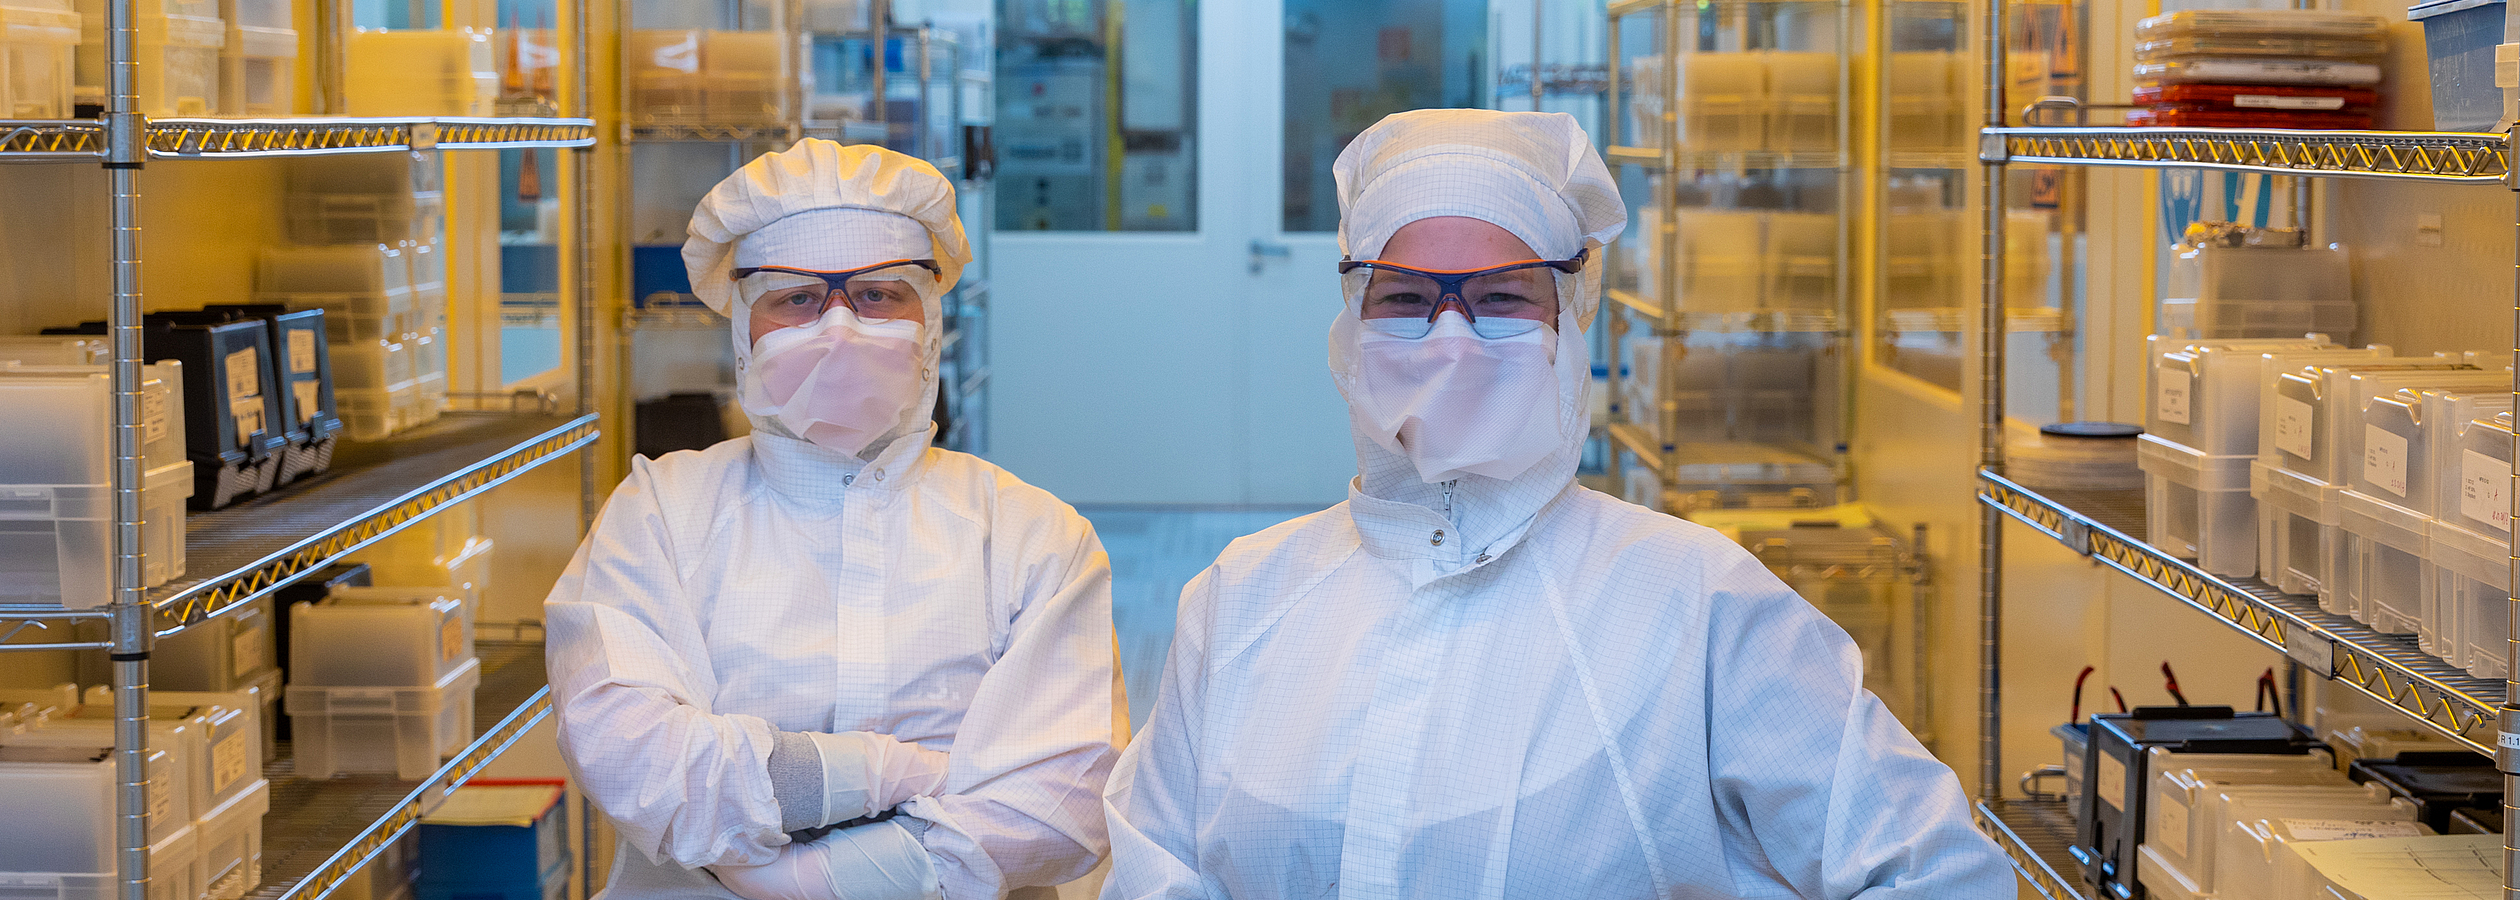 Mikrotechnologen in einem Schutzanzug im Labor